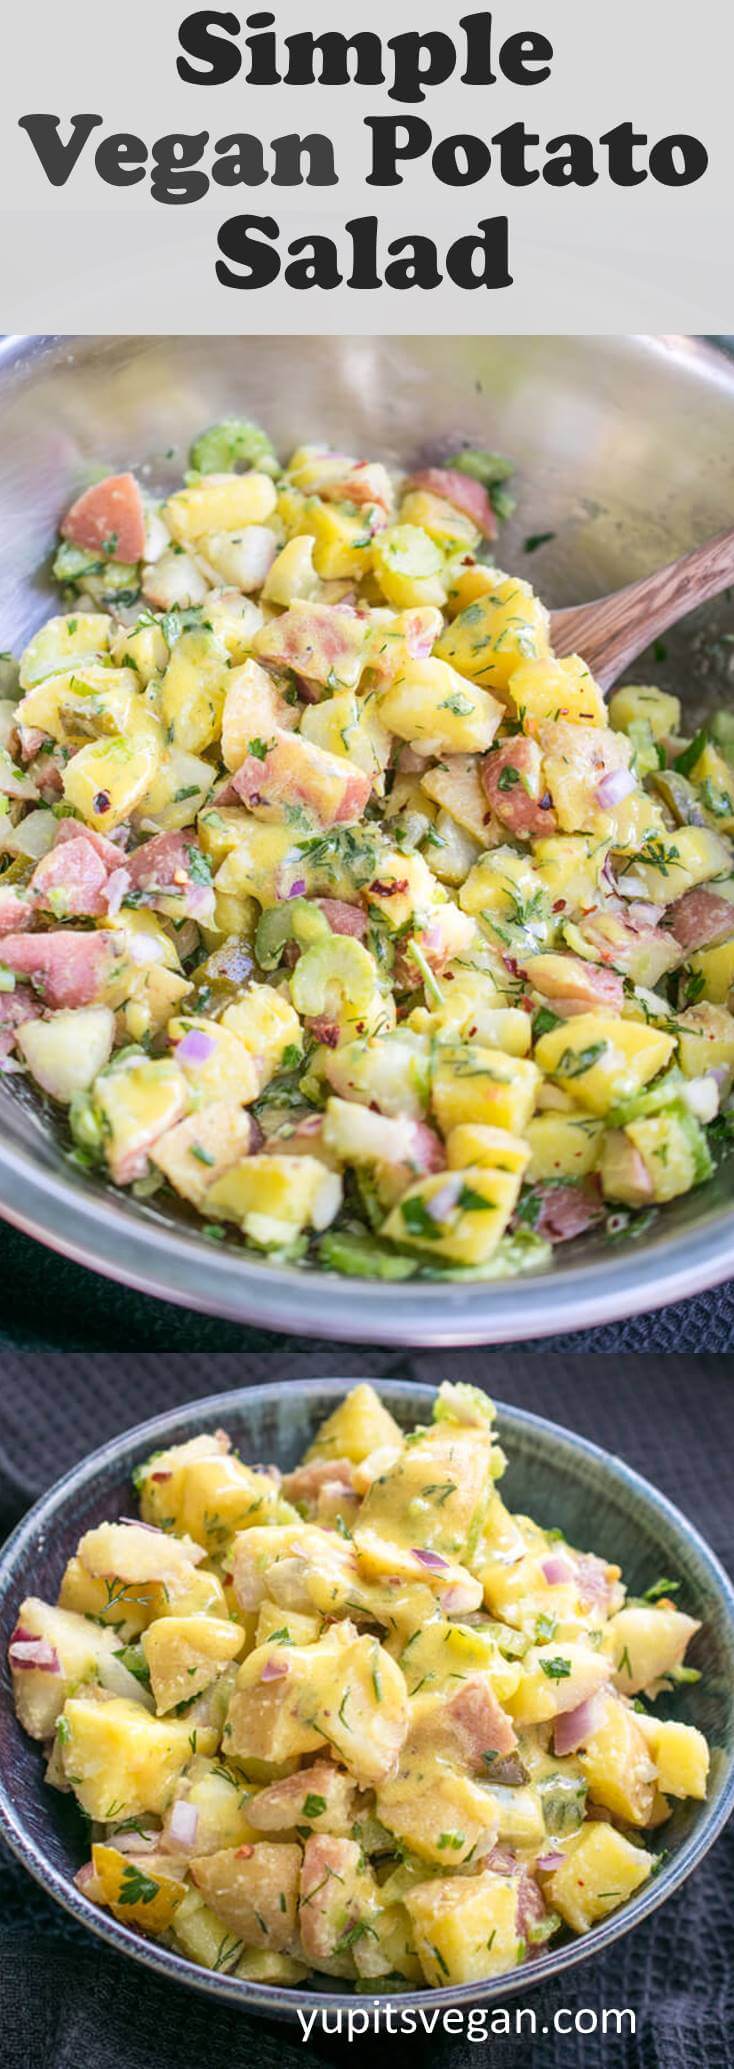 Easy Vegan Potato Salad Recipe | Yup, it's Vegan